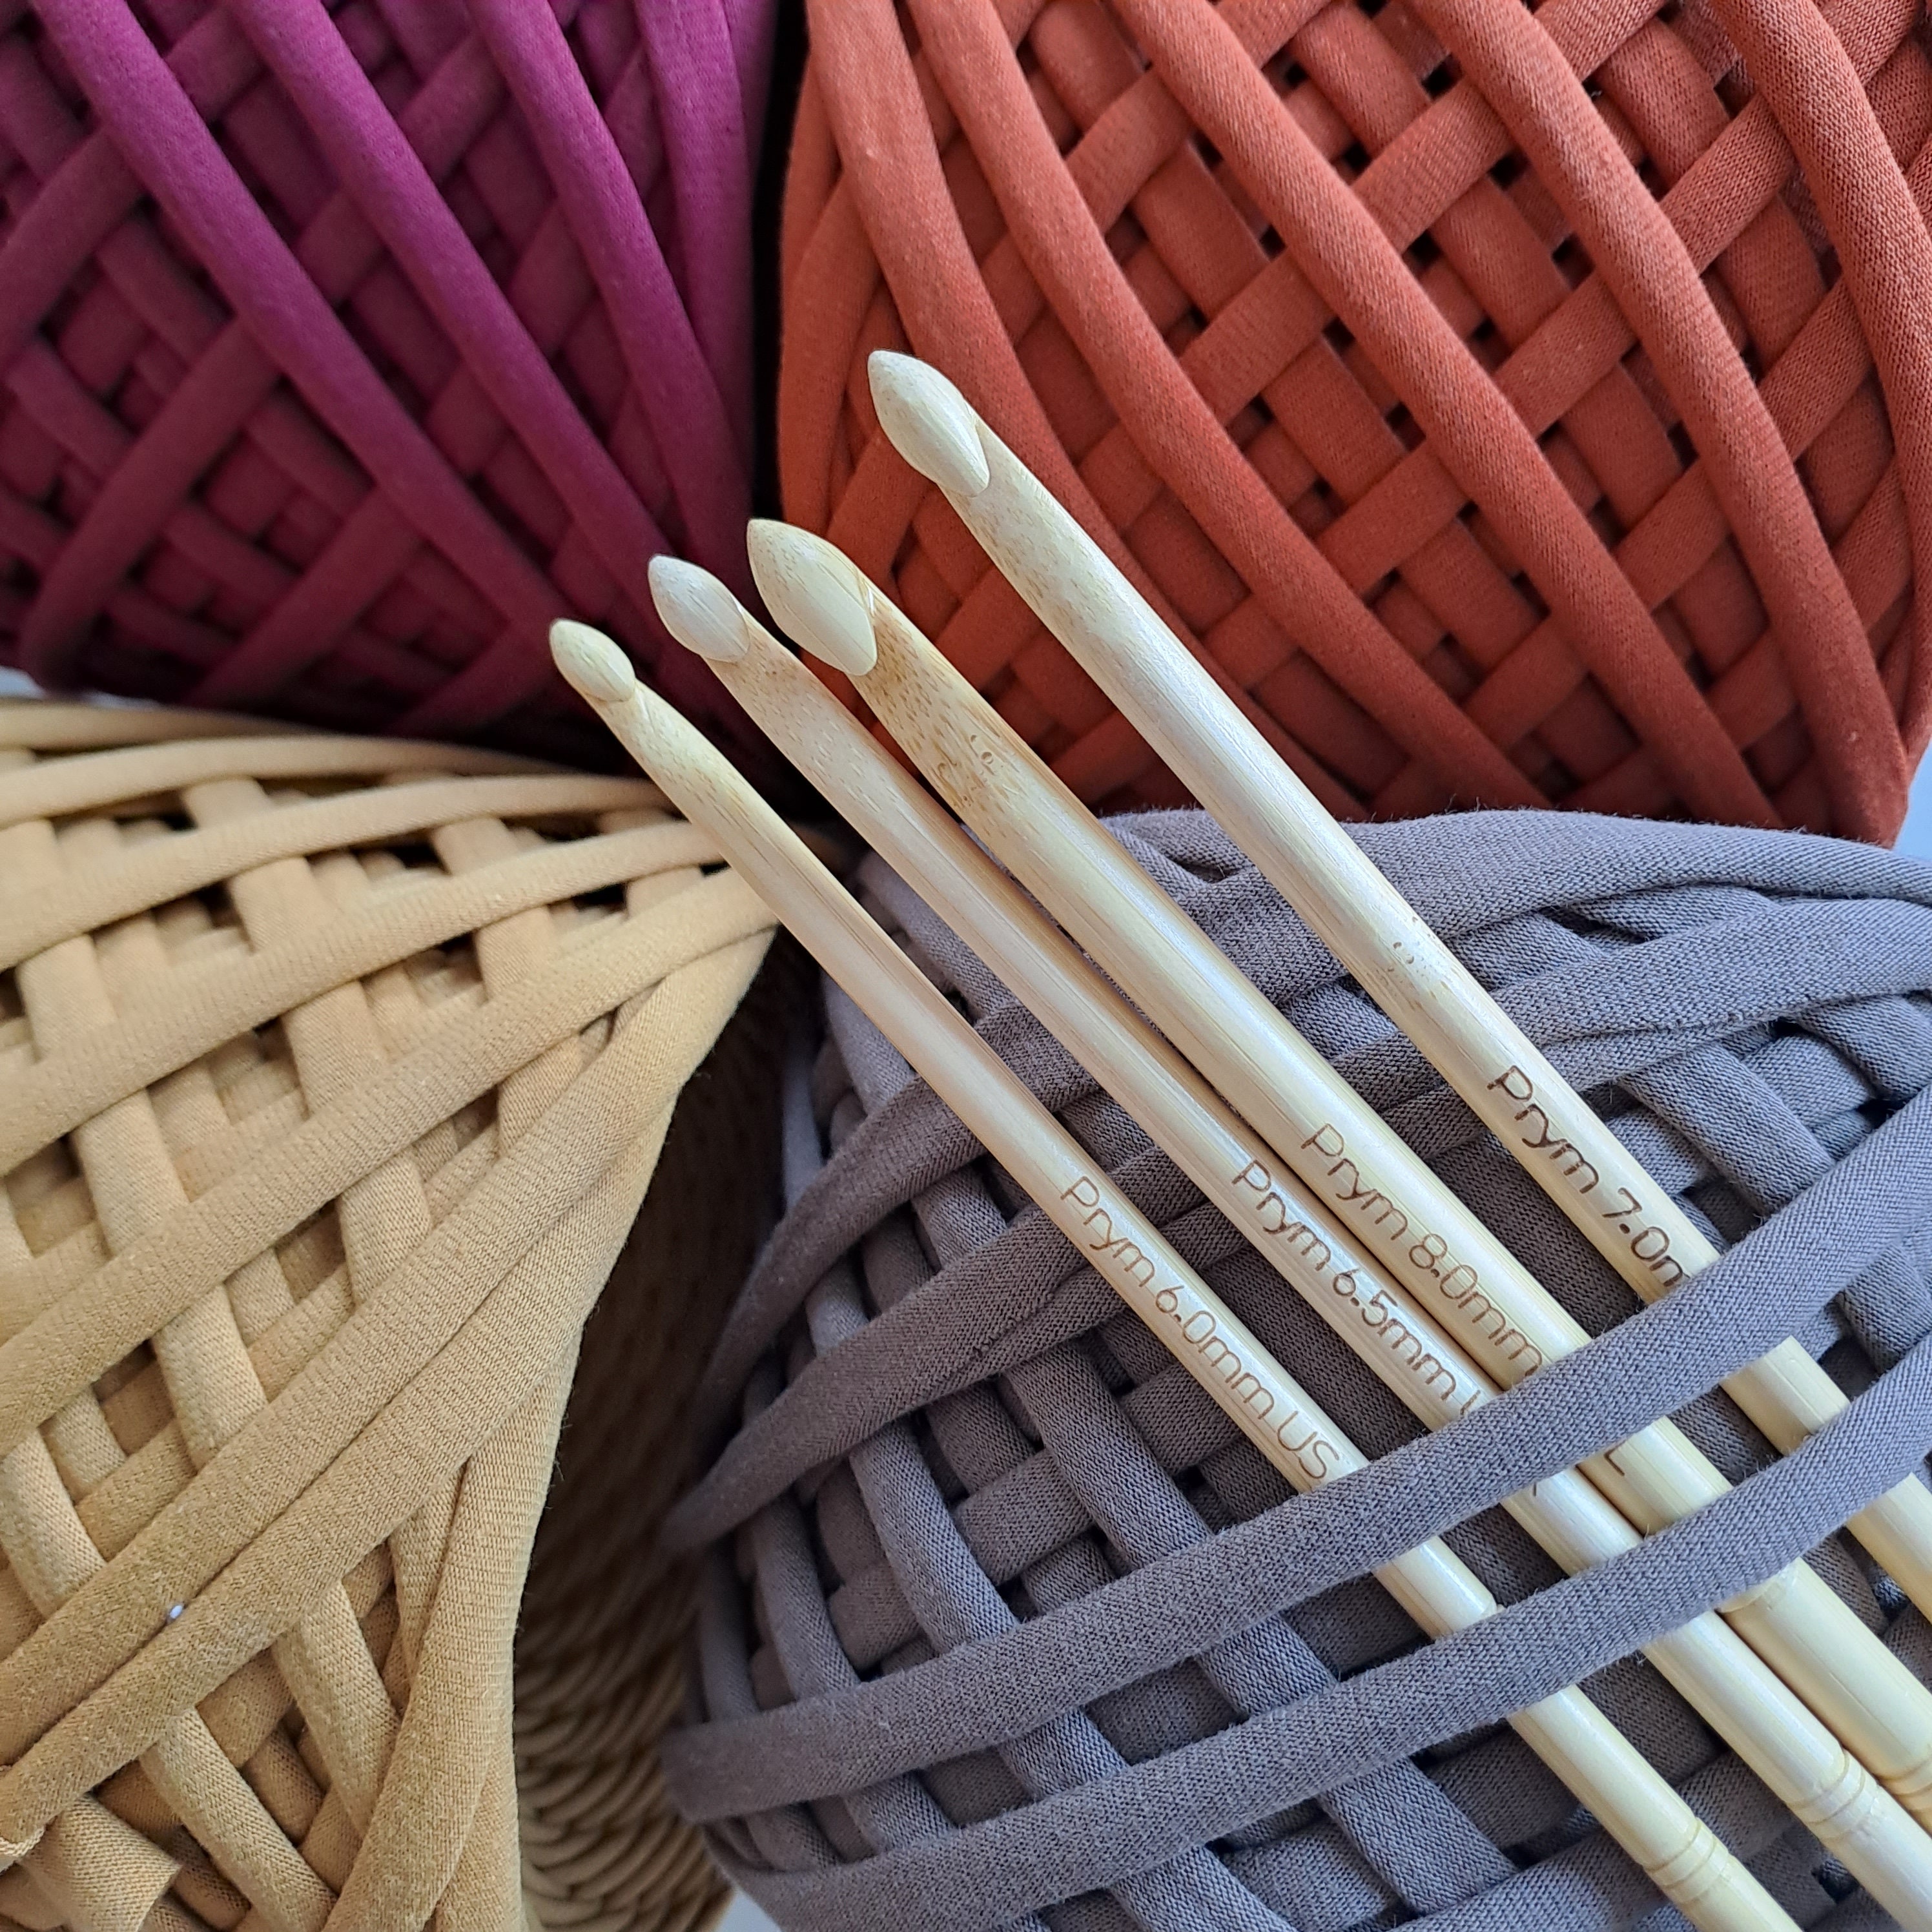 8 Piece Ergonomic Bamboo Lightweight Design Crochet Hook Set Mothers Day  Crochet Gift Set 